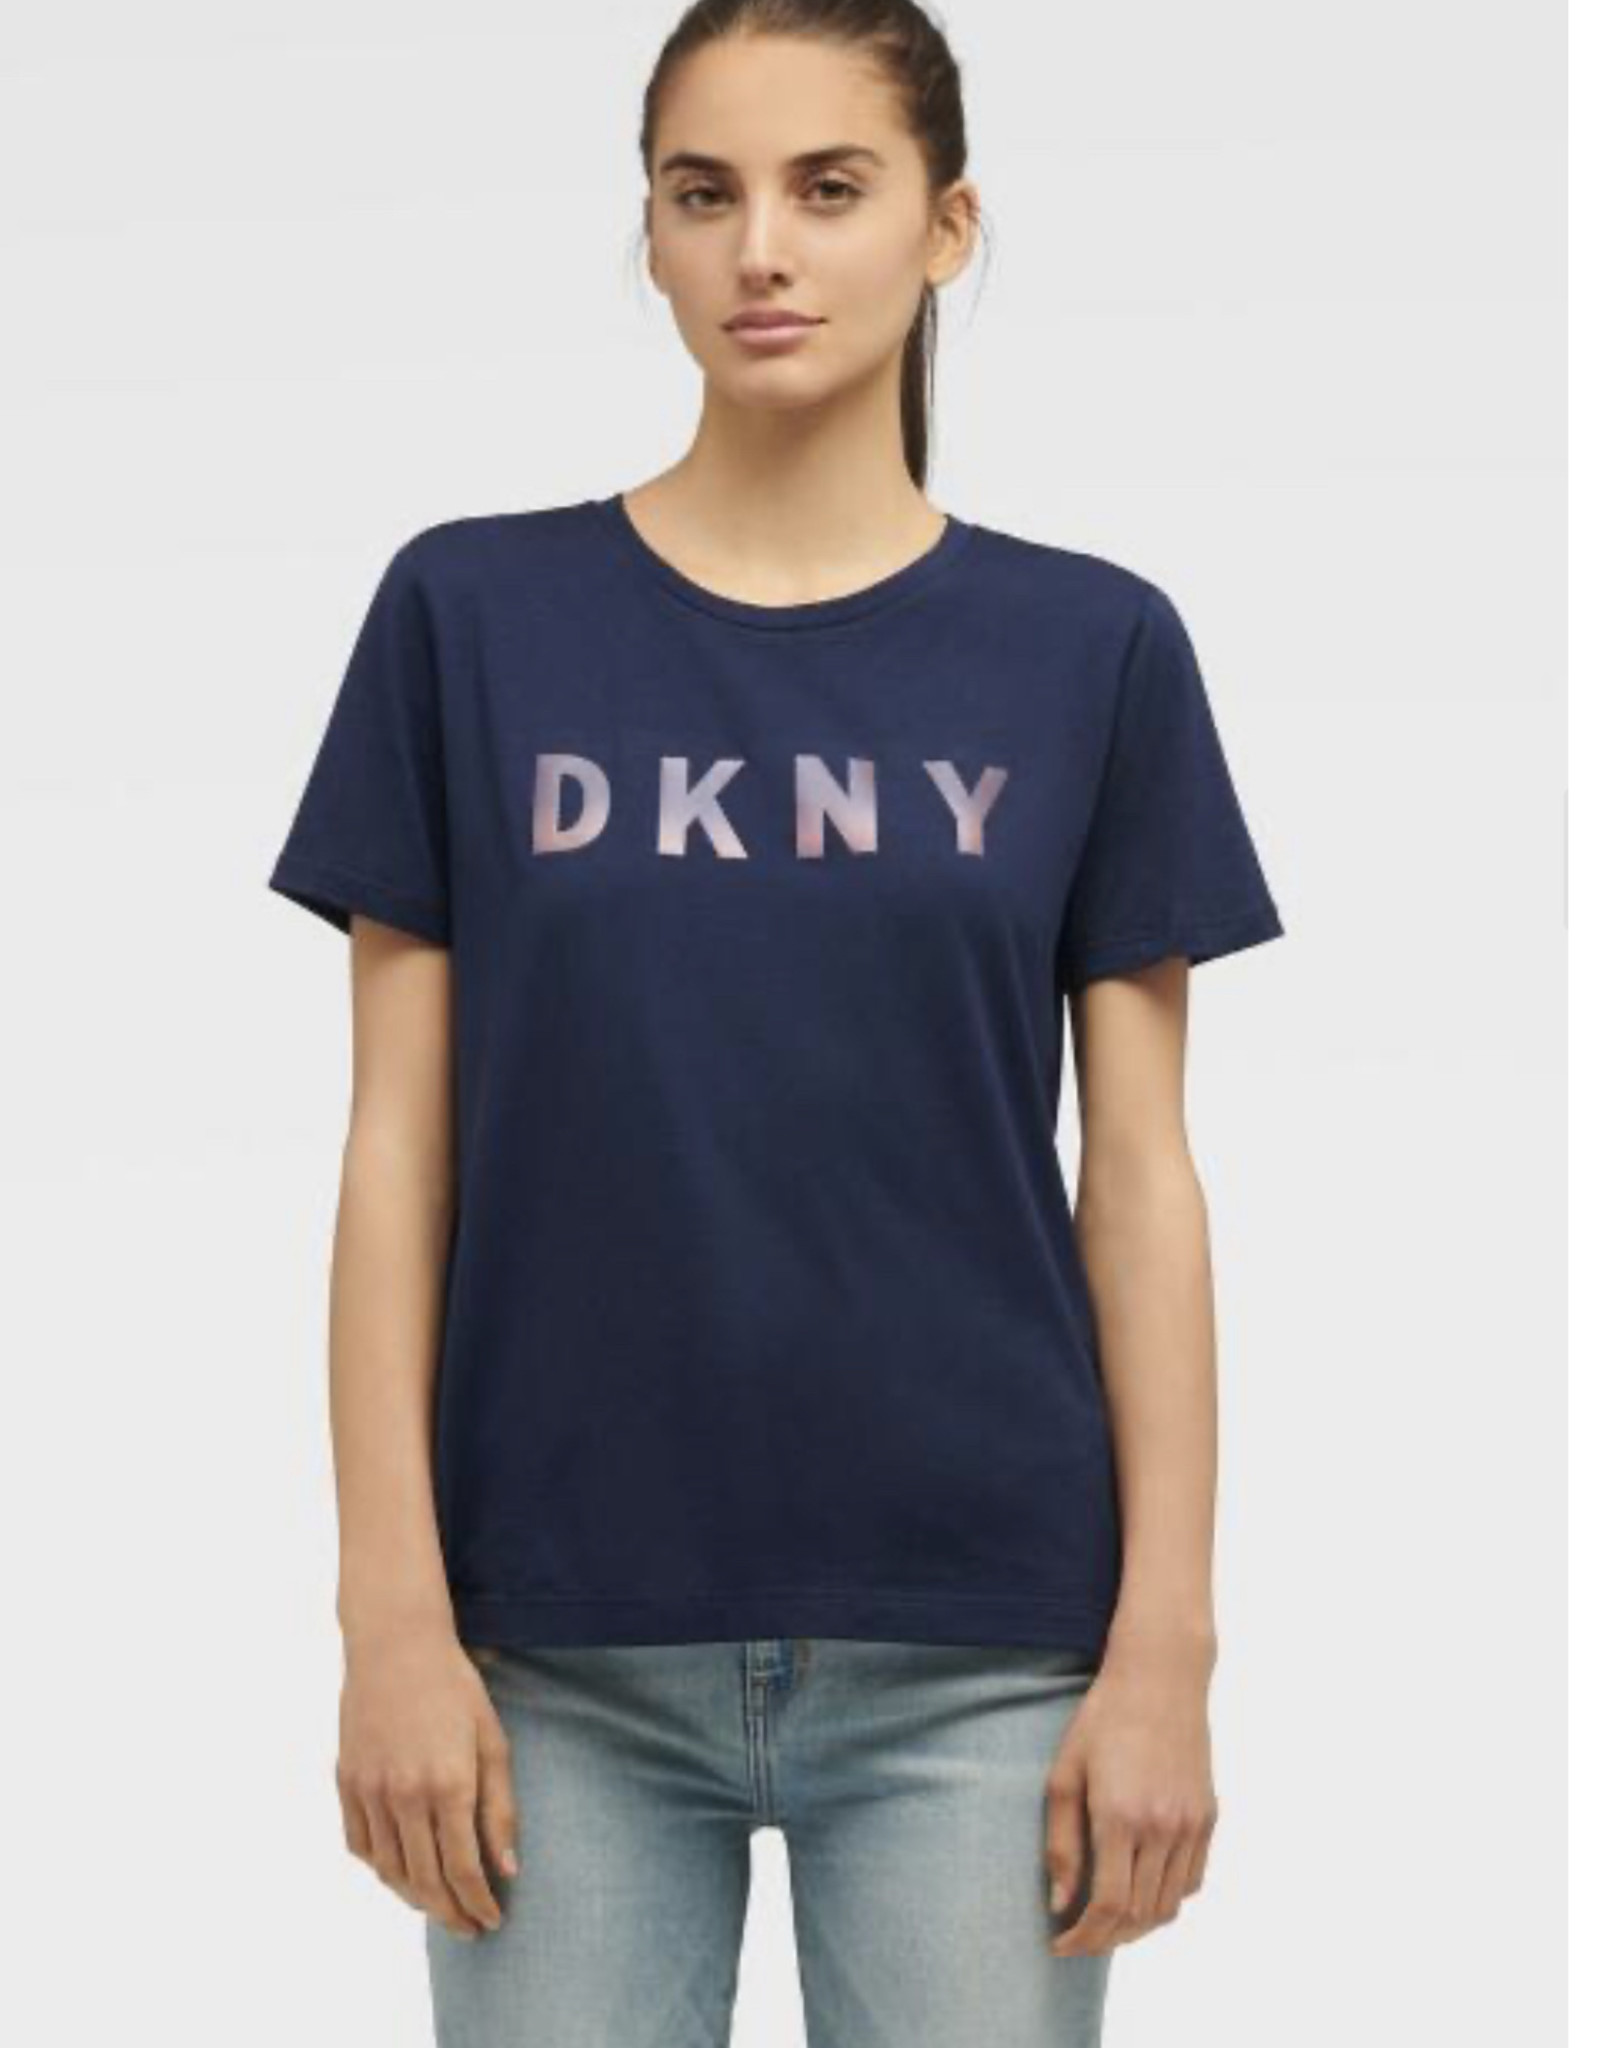 DKNY DKNY Tee